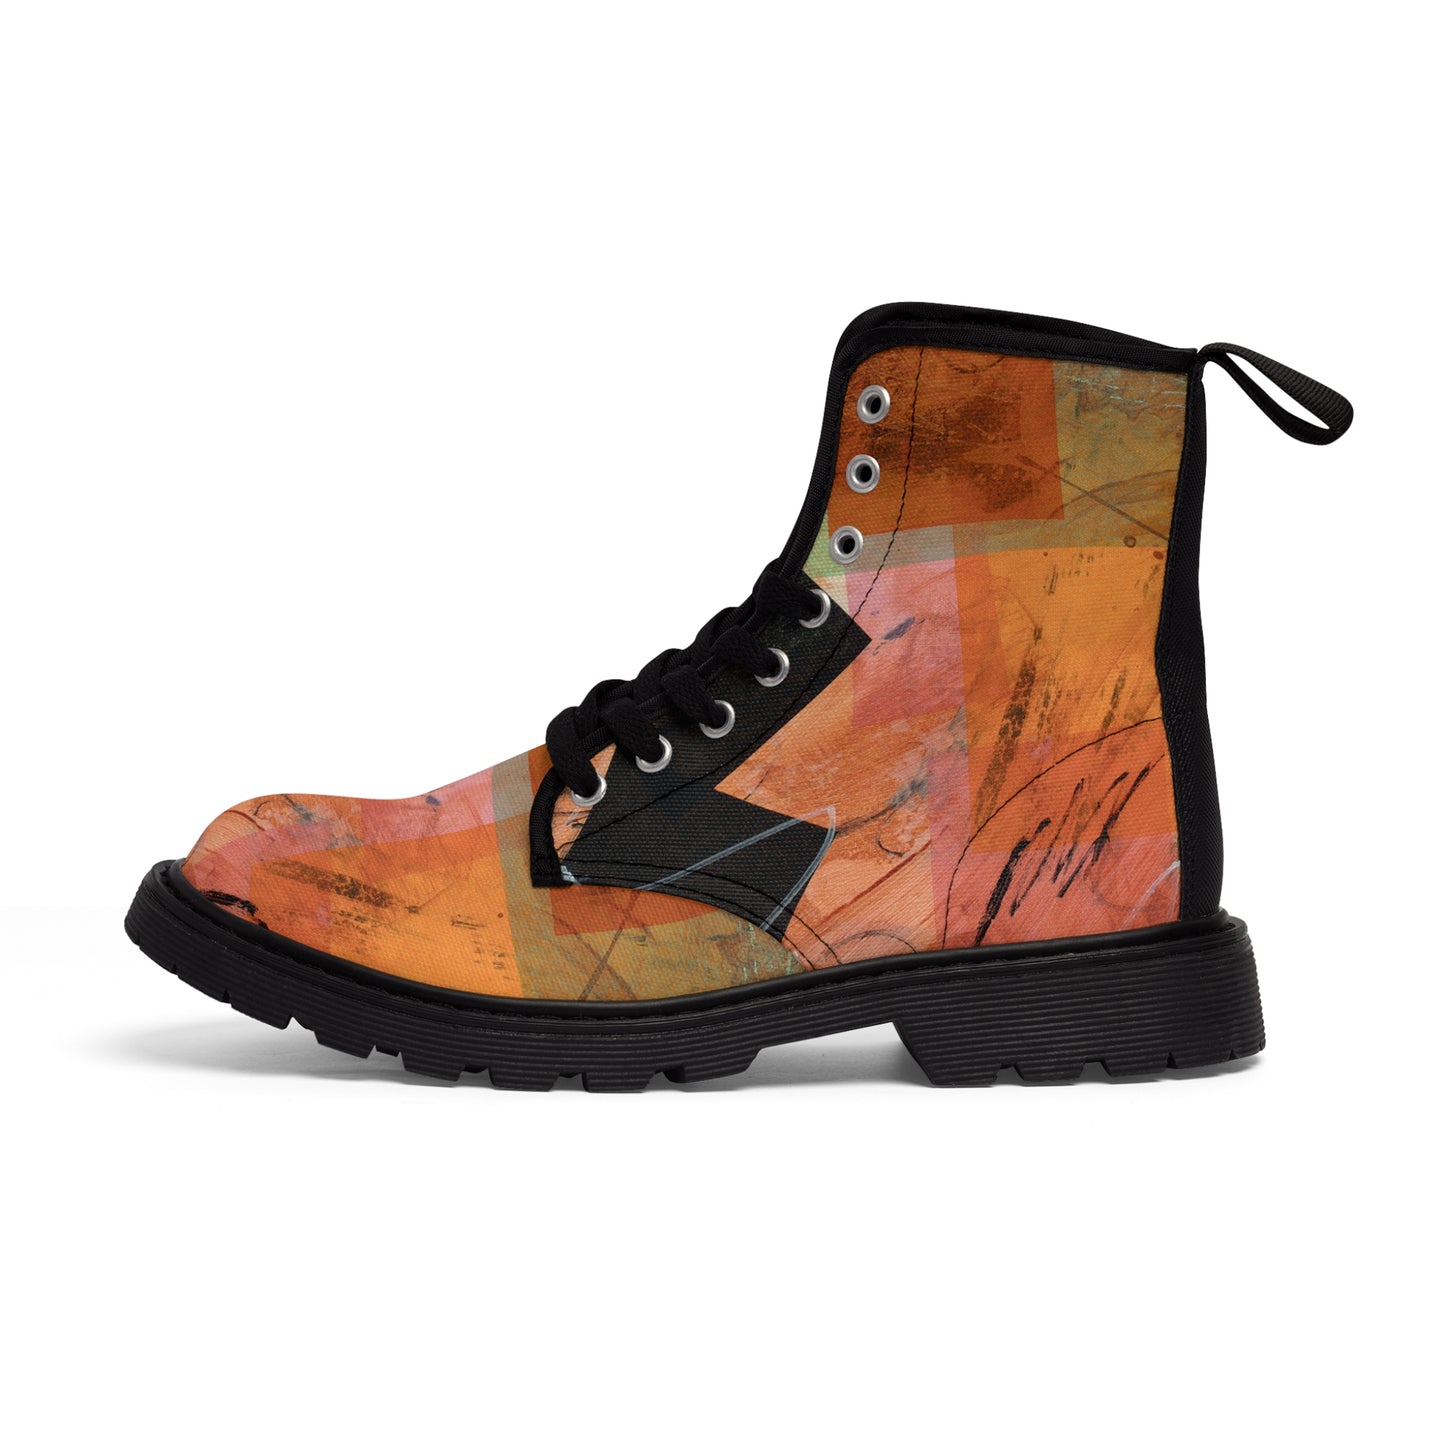 Men's Canvas Boots - 02861 US 10.5 Black sole